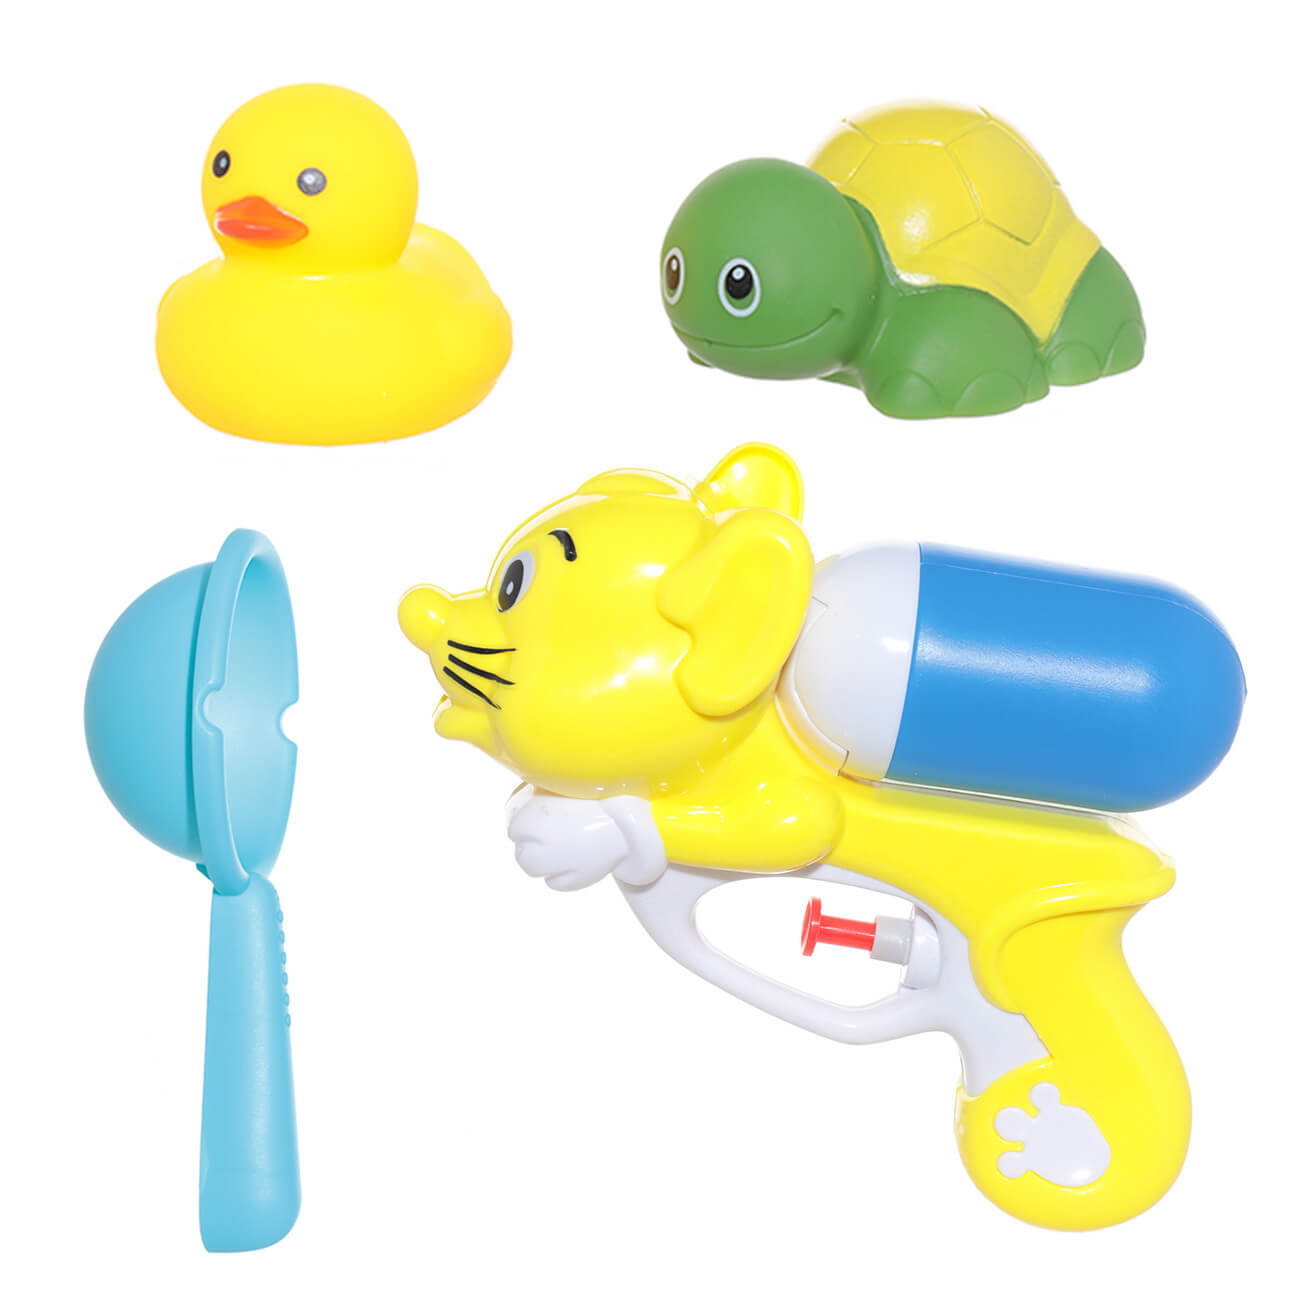 Набор игрушек для купания, 4 пр, водный пистолет/игрушки, резина/пластик, желтый, Duck подпяточник duck and dog 38 мм круглый пластик 4 шт